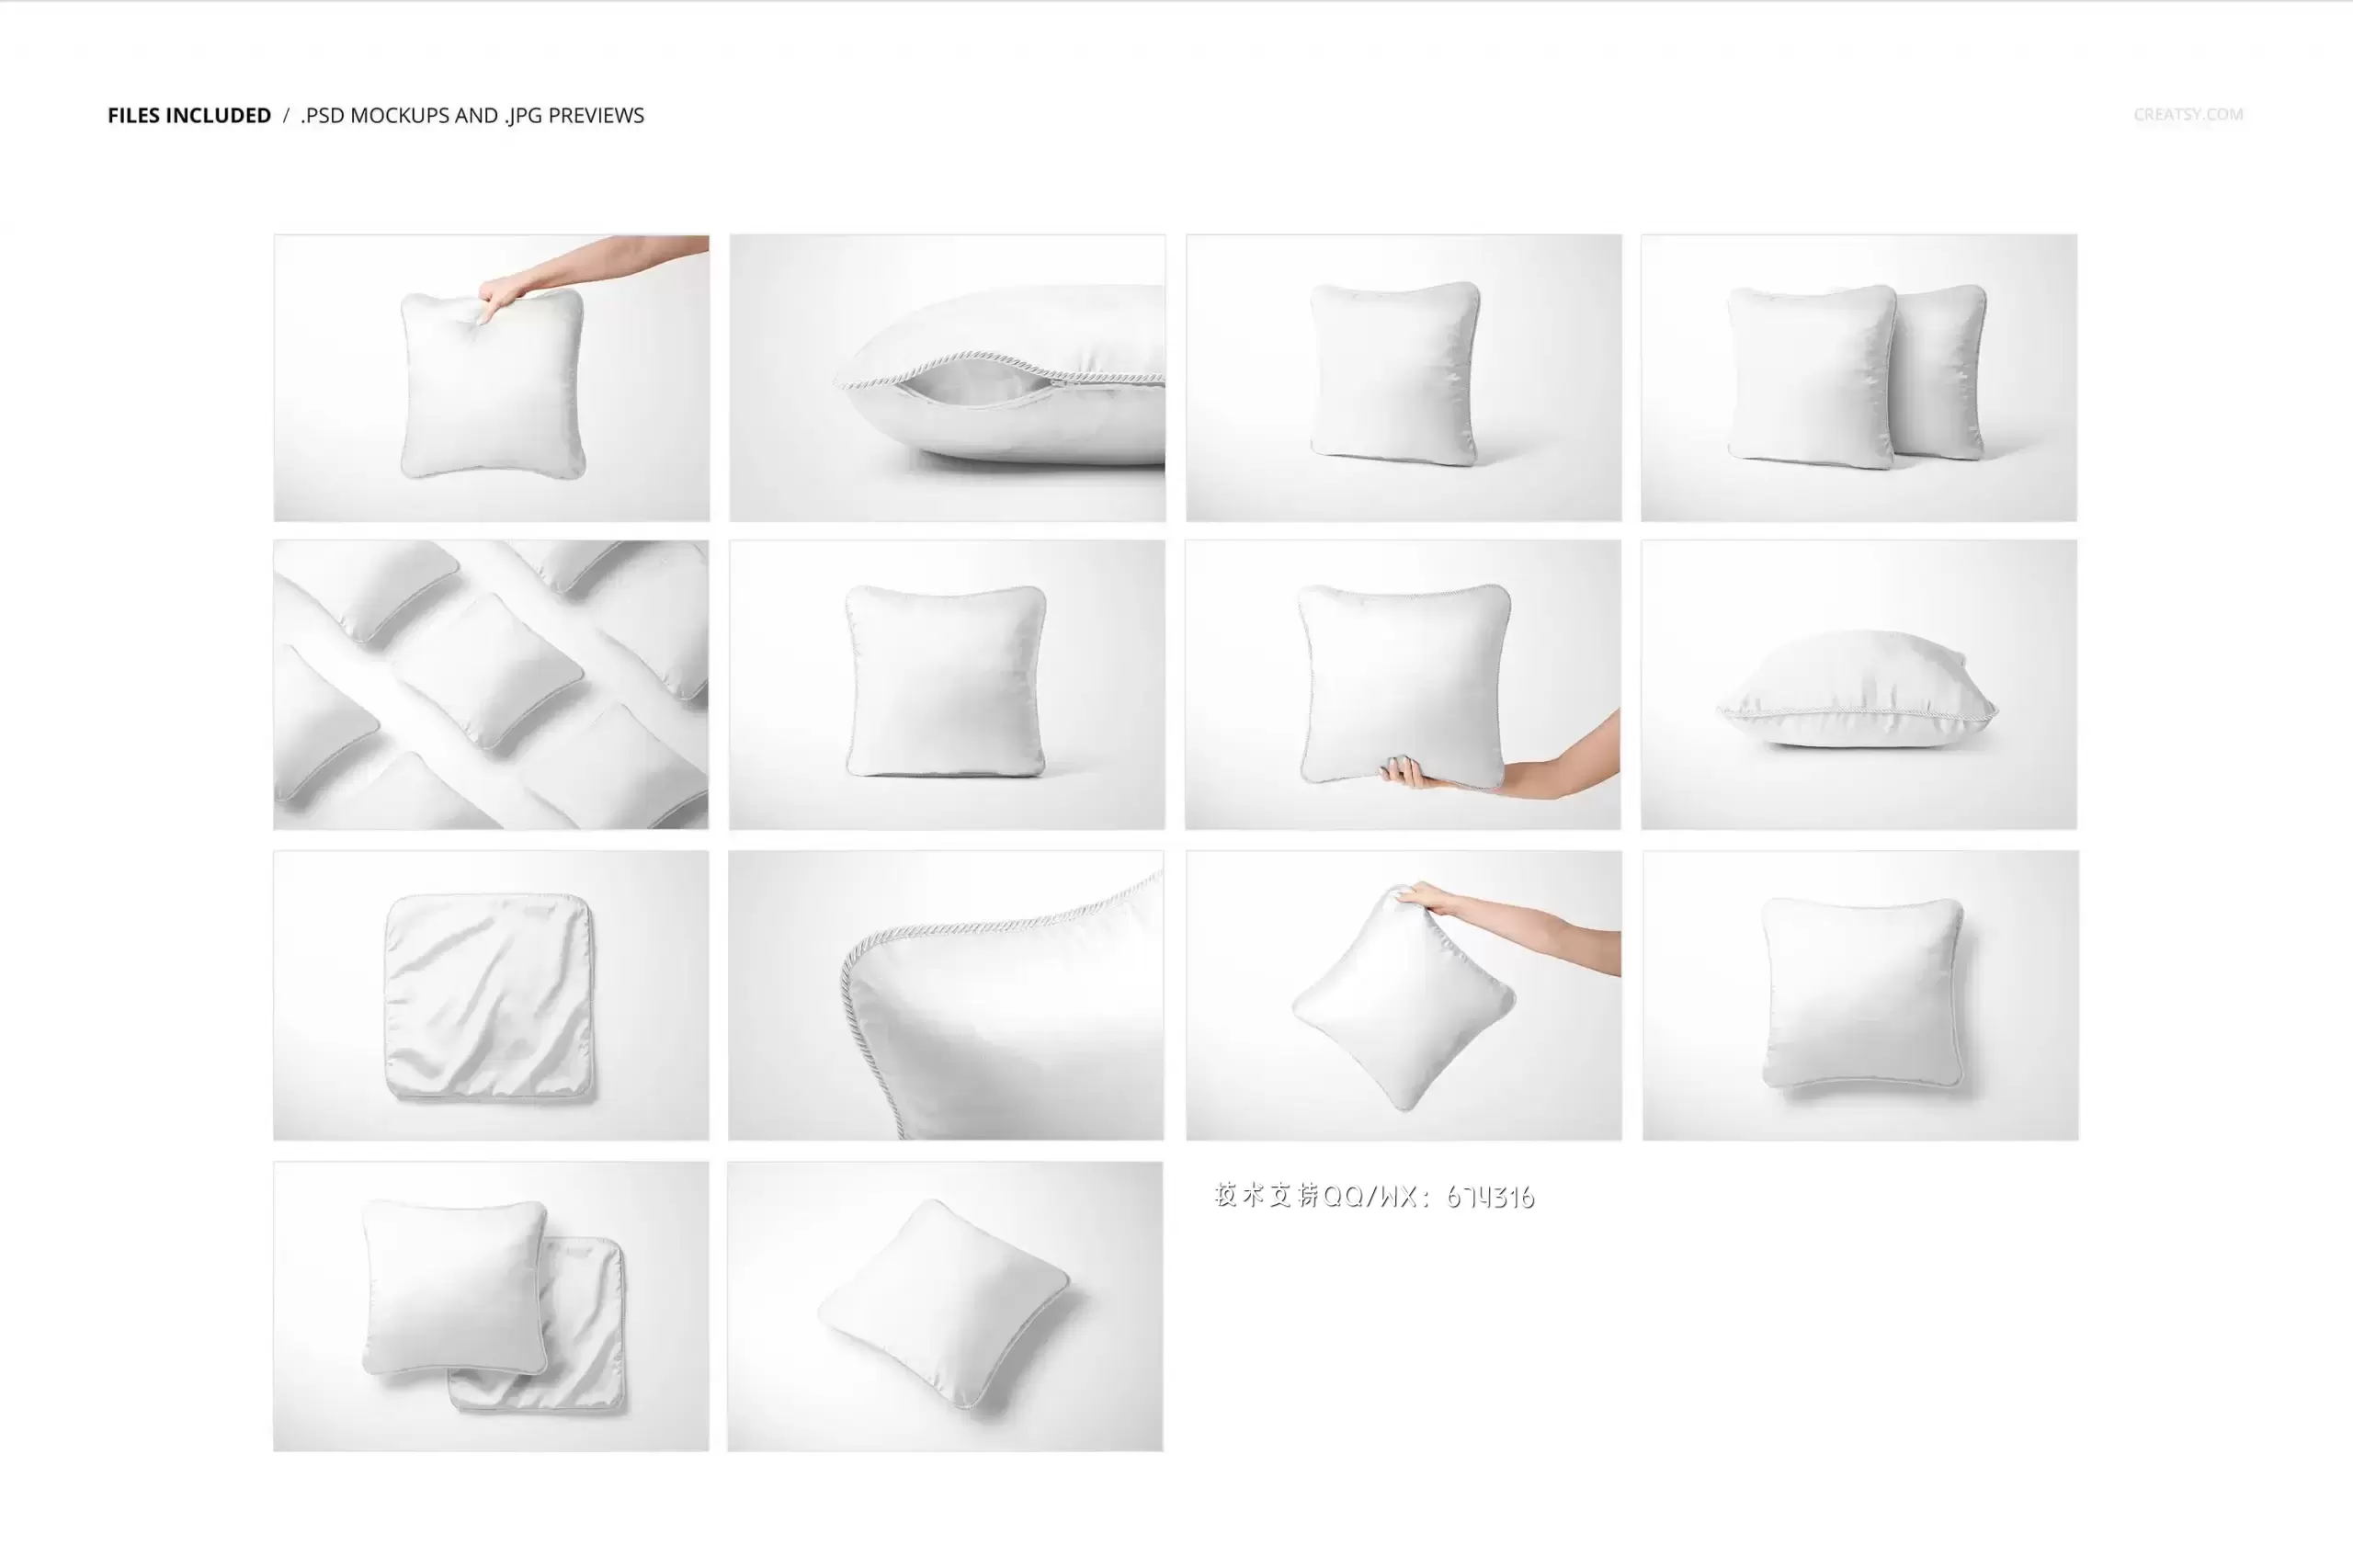 真丝编织套垫图案设计枕头样机[3.98GB,PSD]免费下载插图16